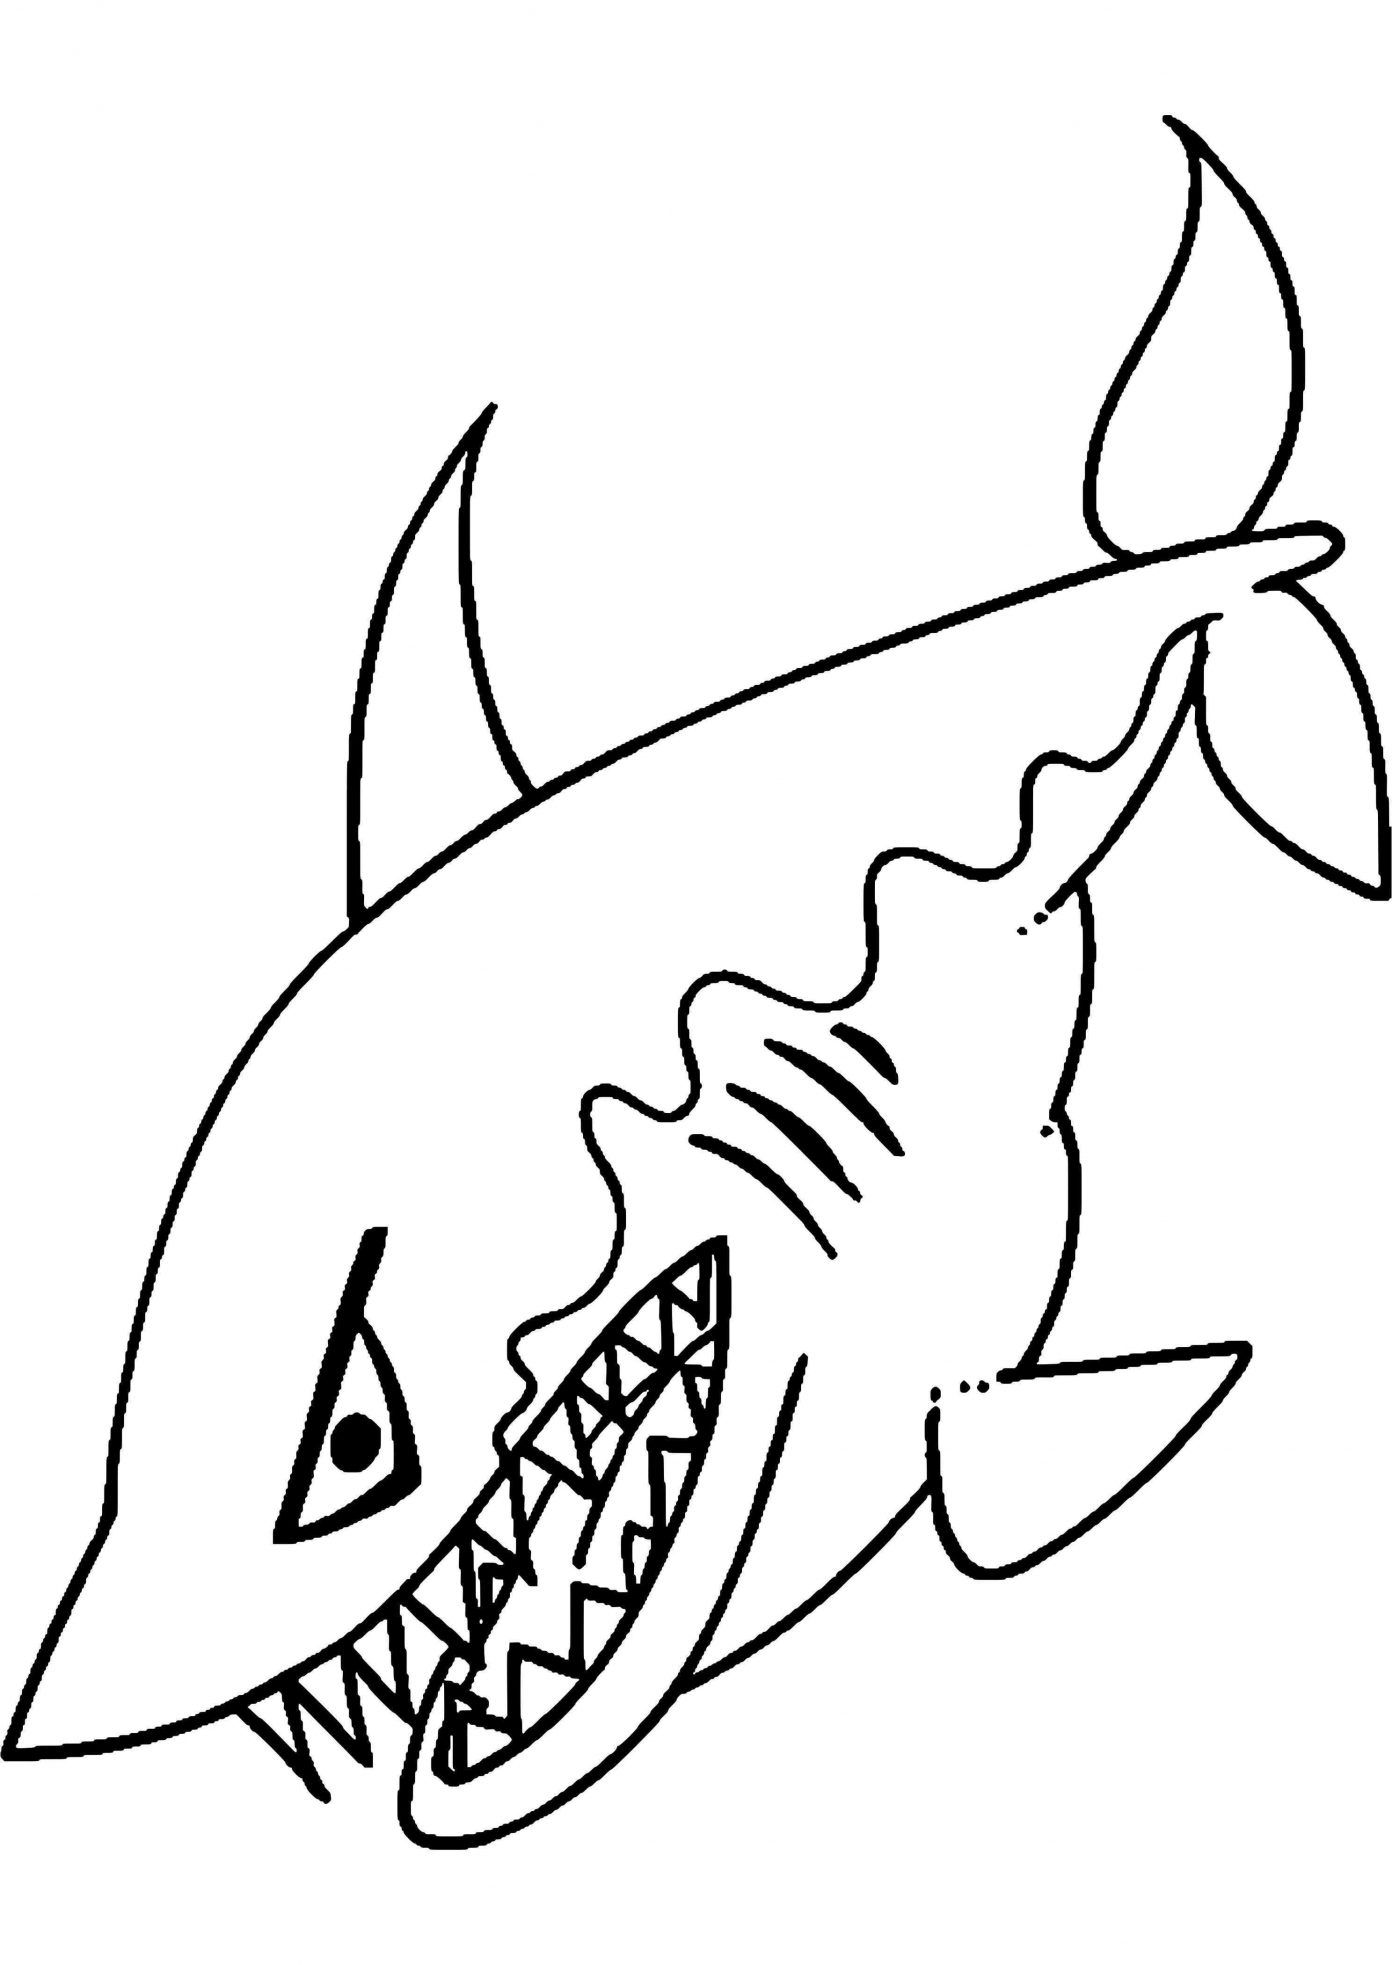 Tranh tô màu con cá mập với hàm răng sắc nhọn